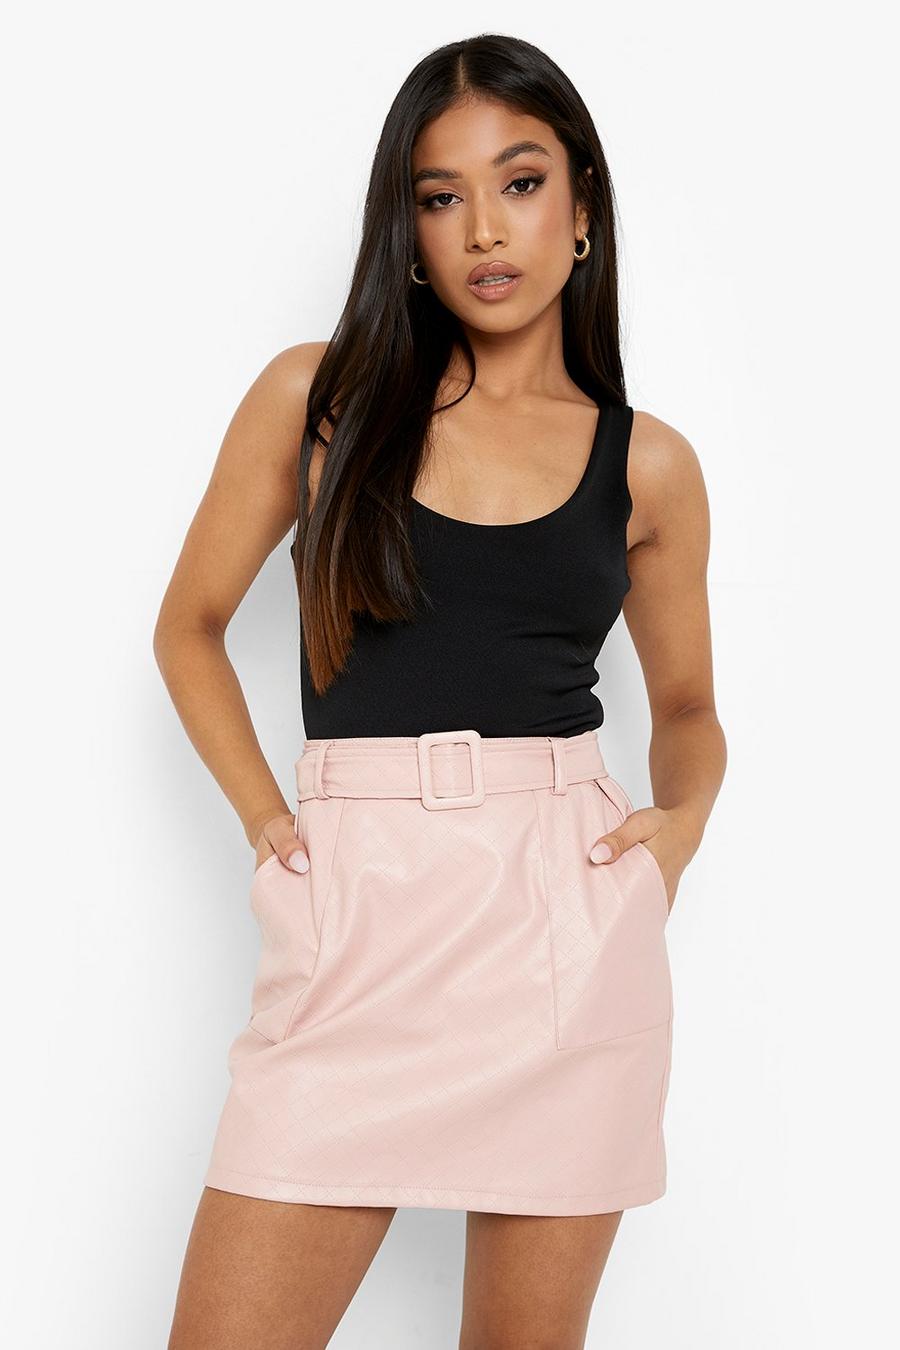 Minifalda Petite acolchada de cuero sintético con cinturón, Pale pink rosa